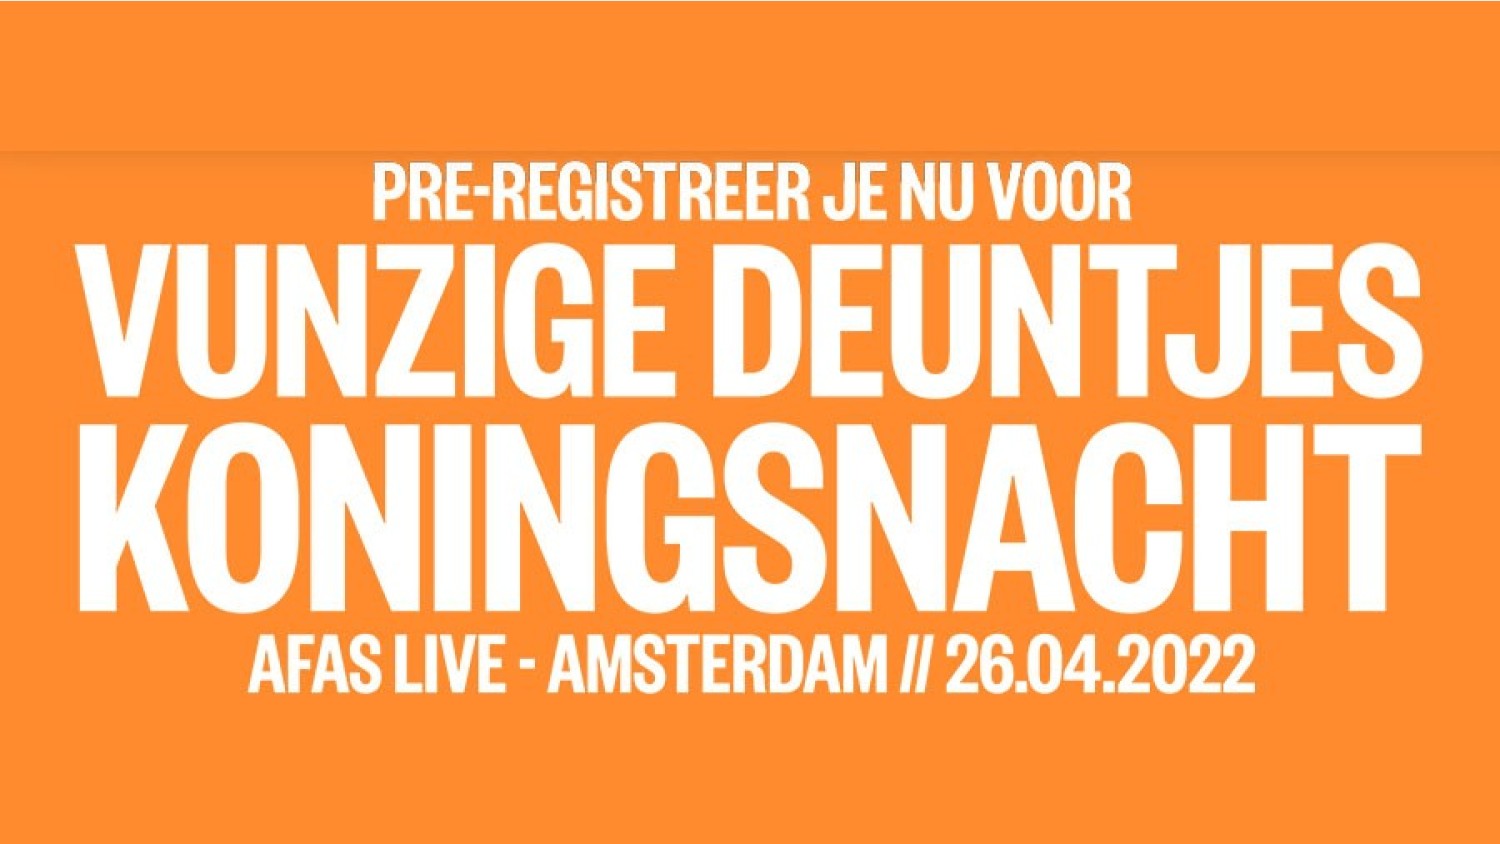 Party nieuws: Pre-registratie geopend voor Vunzige Deuntjes Koningsnacht